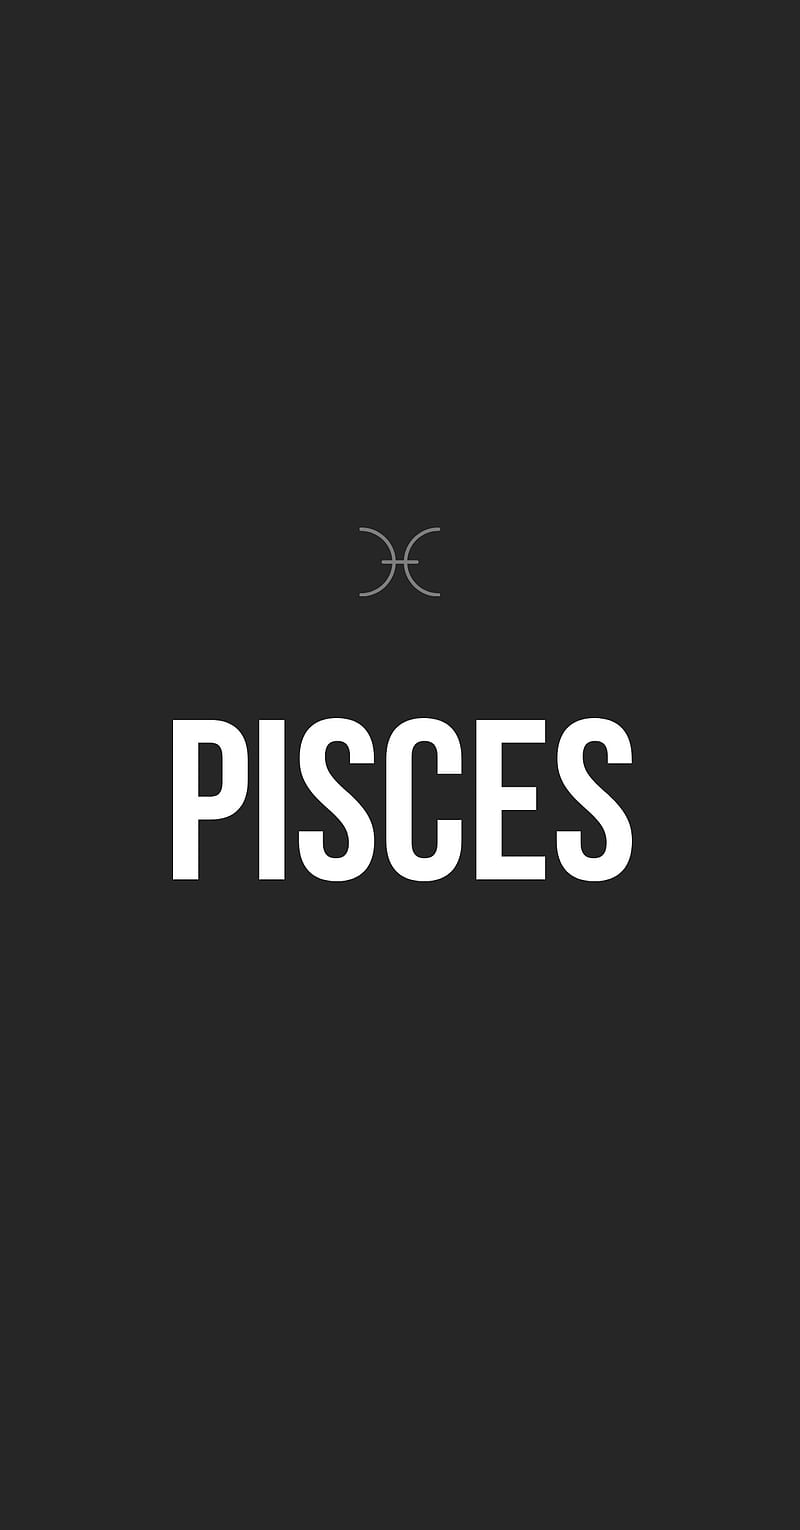 The pisces logo - Pisces